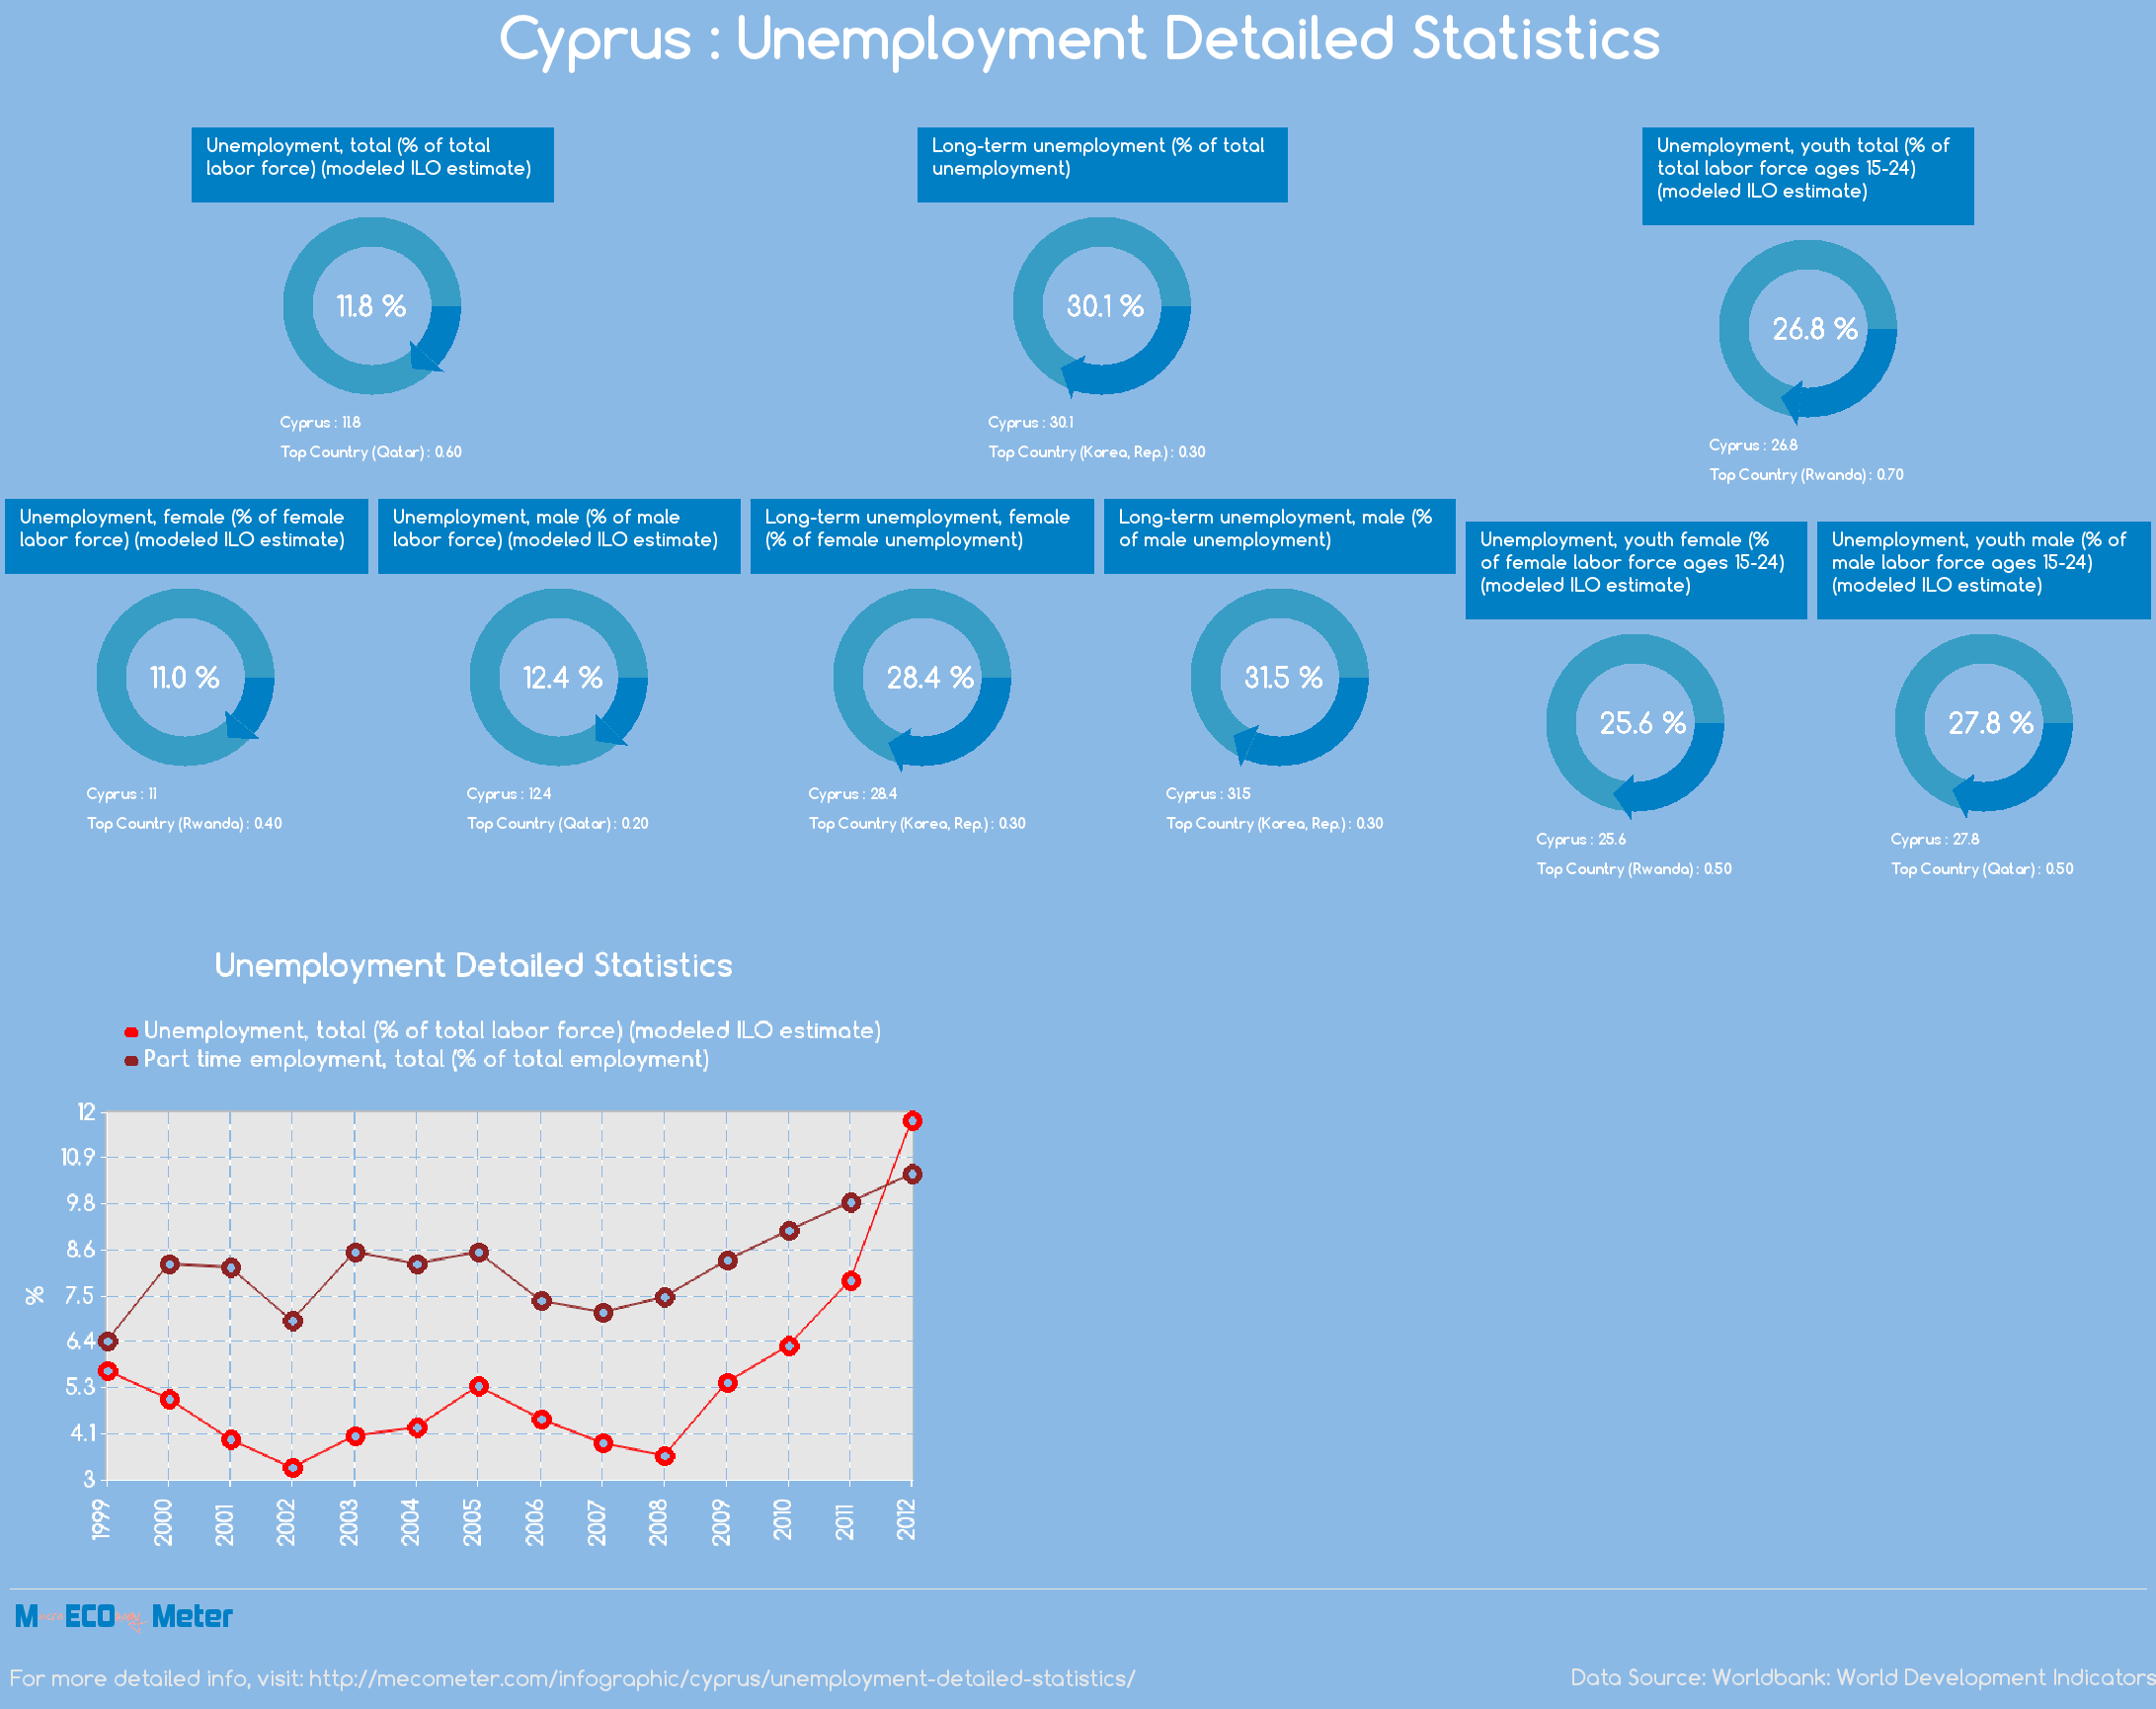 Cyprus : Unemployment Detailed Statistics